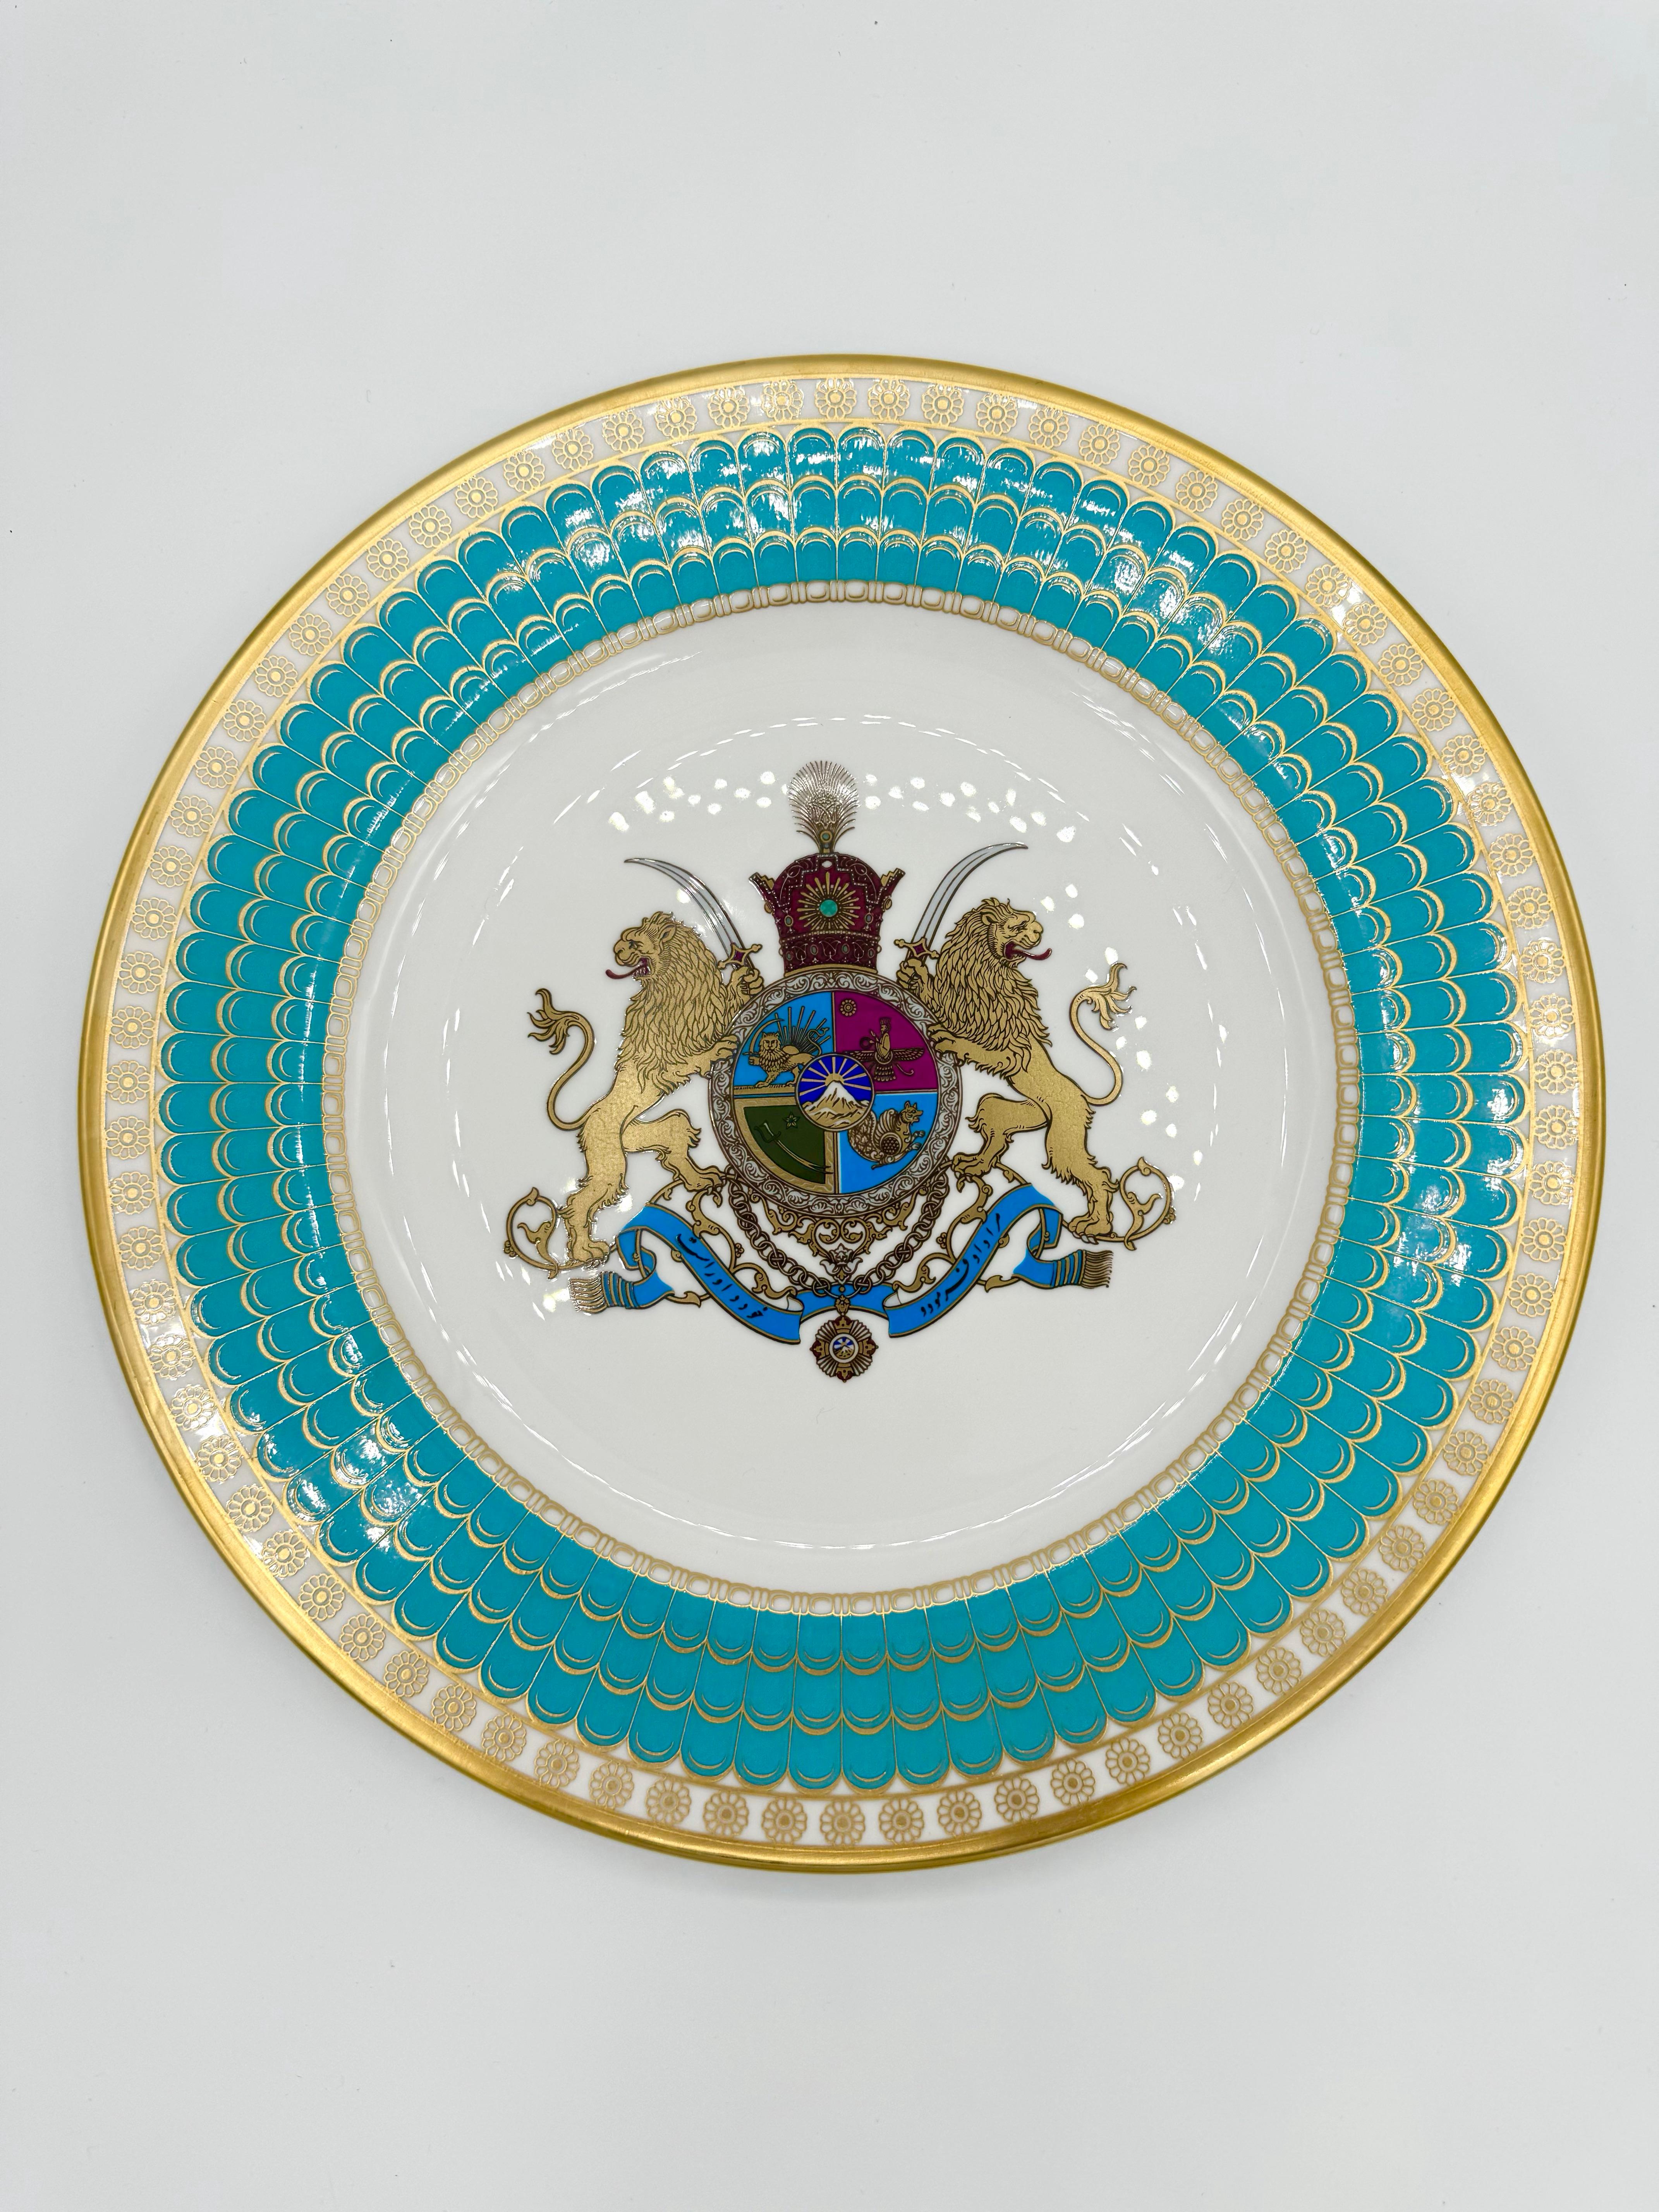 Eines von 10.000 Exemplaren, die 1971 von Spode zum Gedenken an 2.500 Jahre persische Monarchie hergestellt wurden. 27 cm Durchmesser.